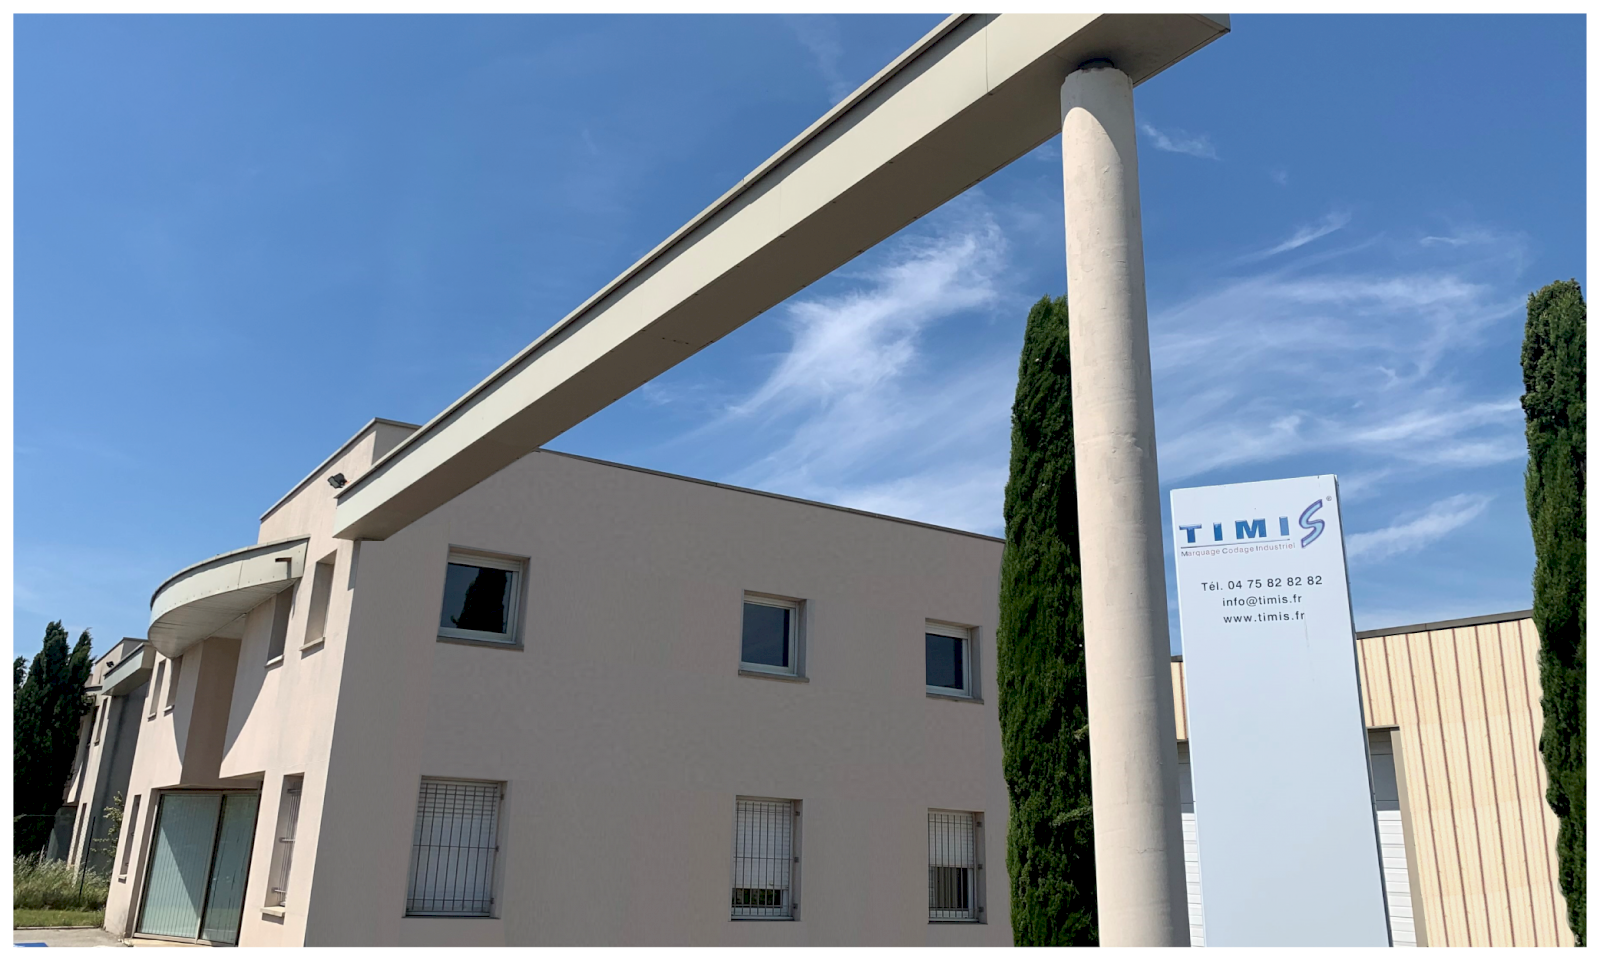 Présentation de TIMIS, société en marquage industriel